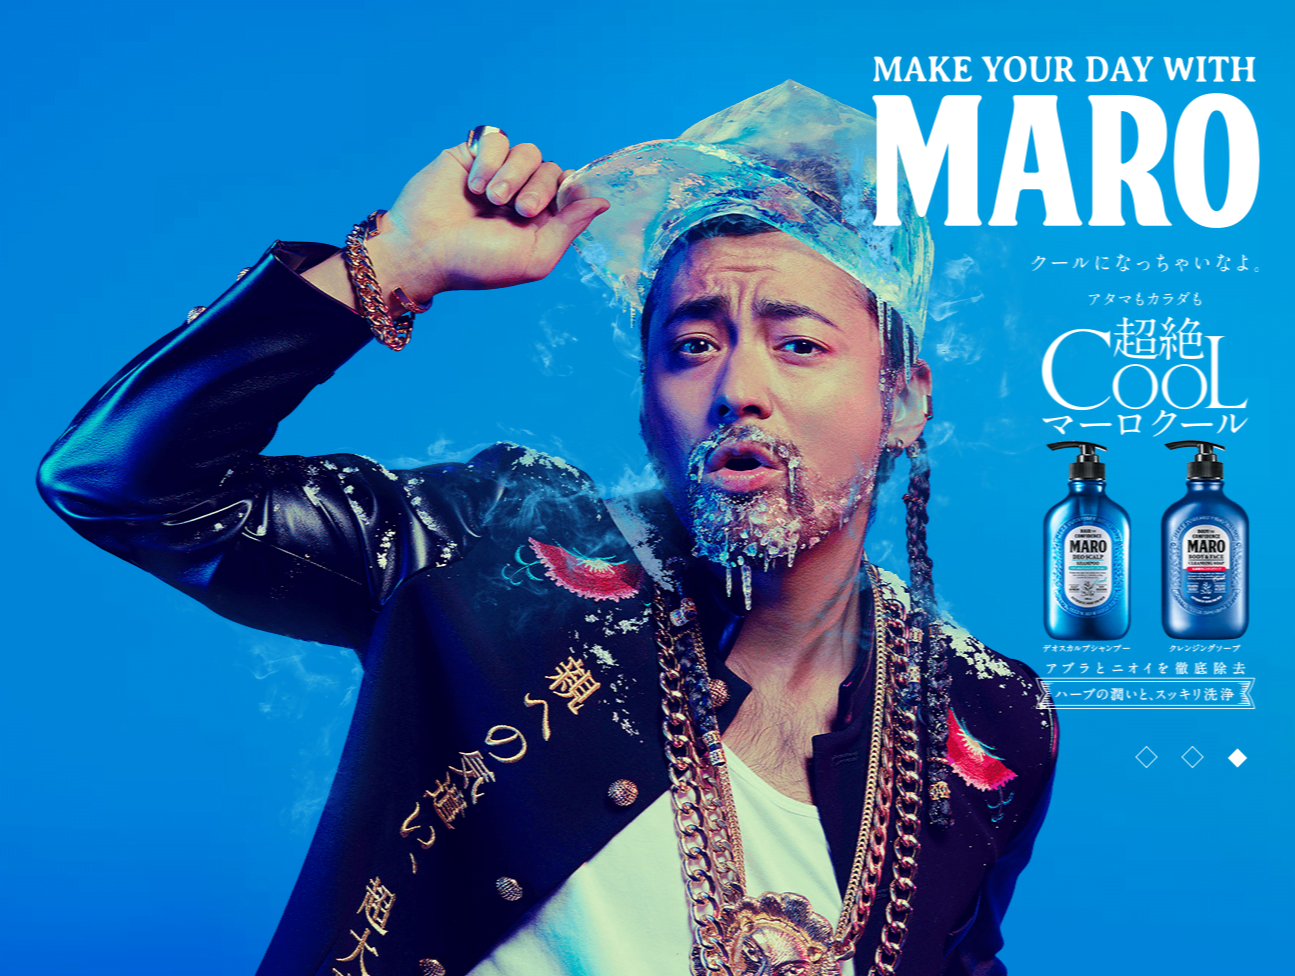 # 東西混合的新黑人造型模樣：山田孝之出演男性清潔保養品牌MARO新一季形象廣告 3